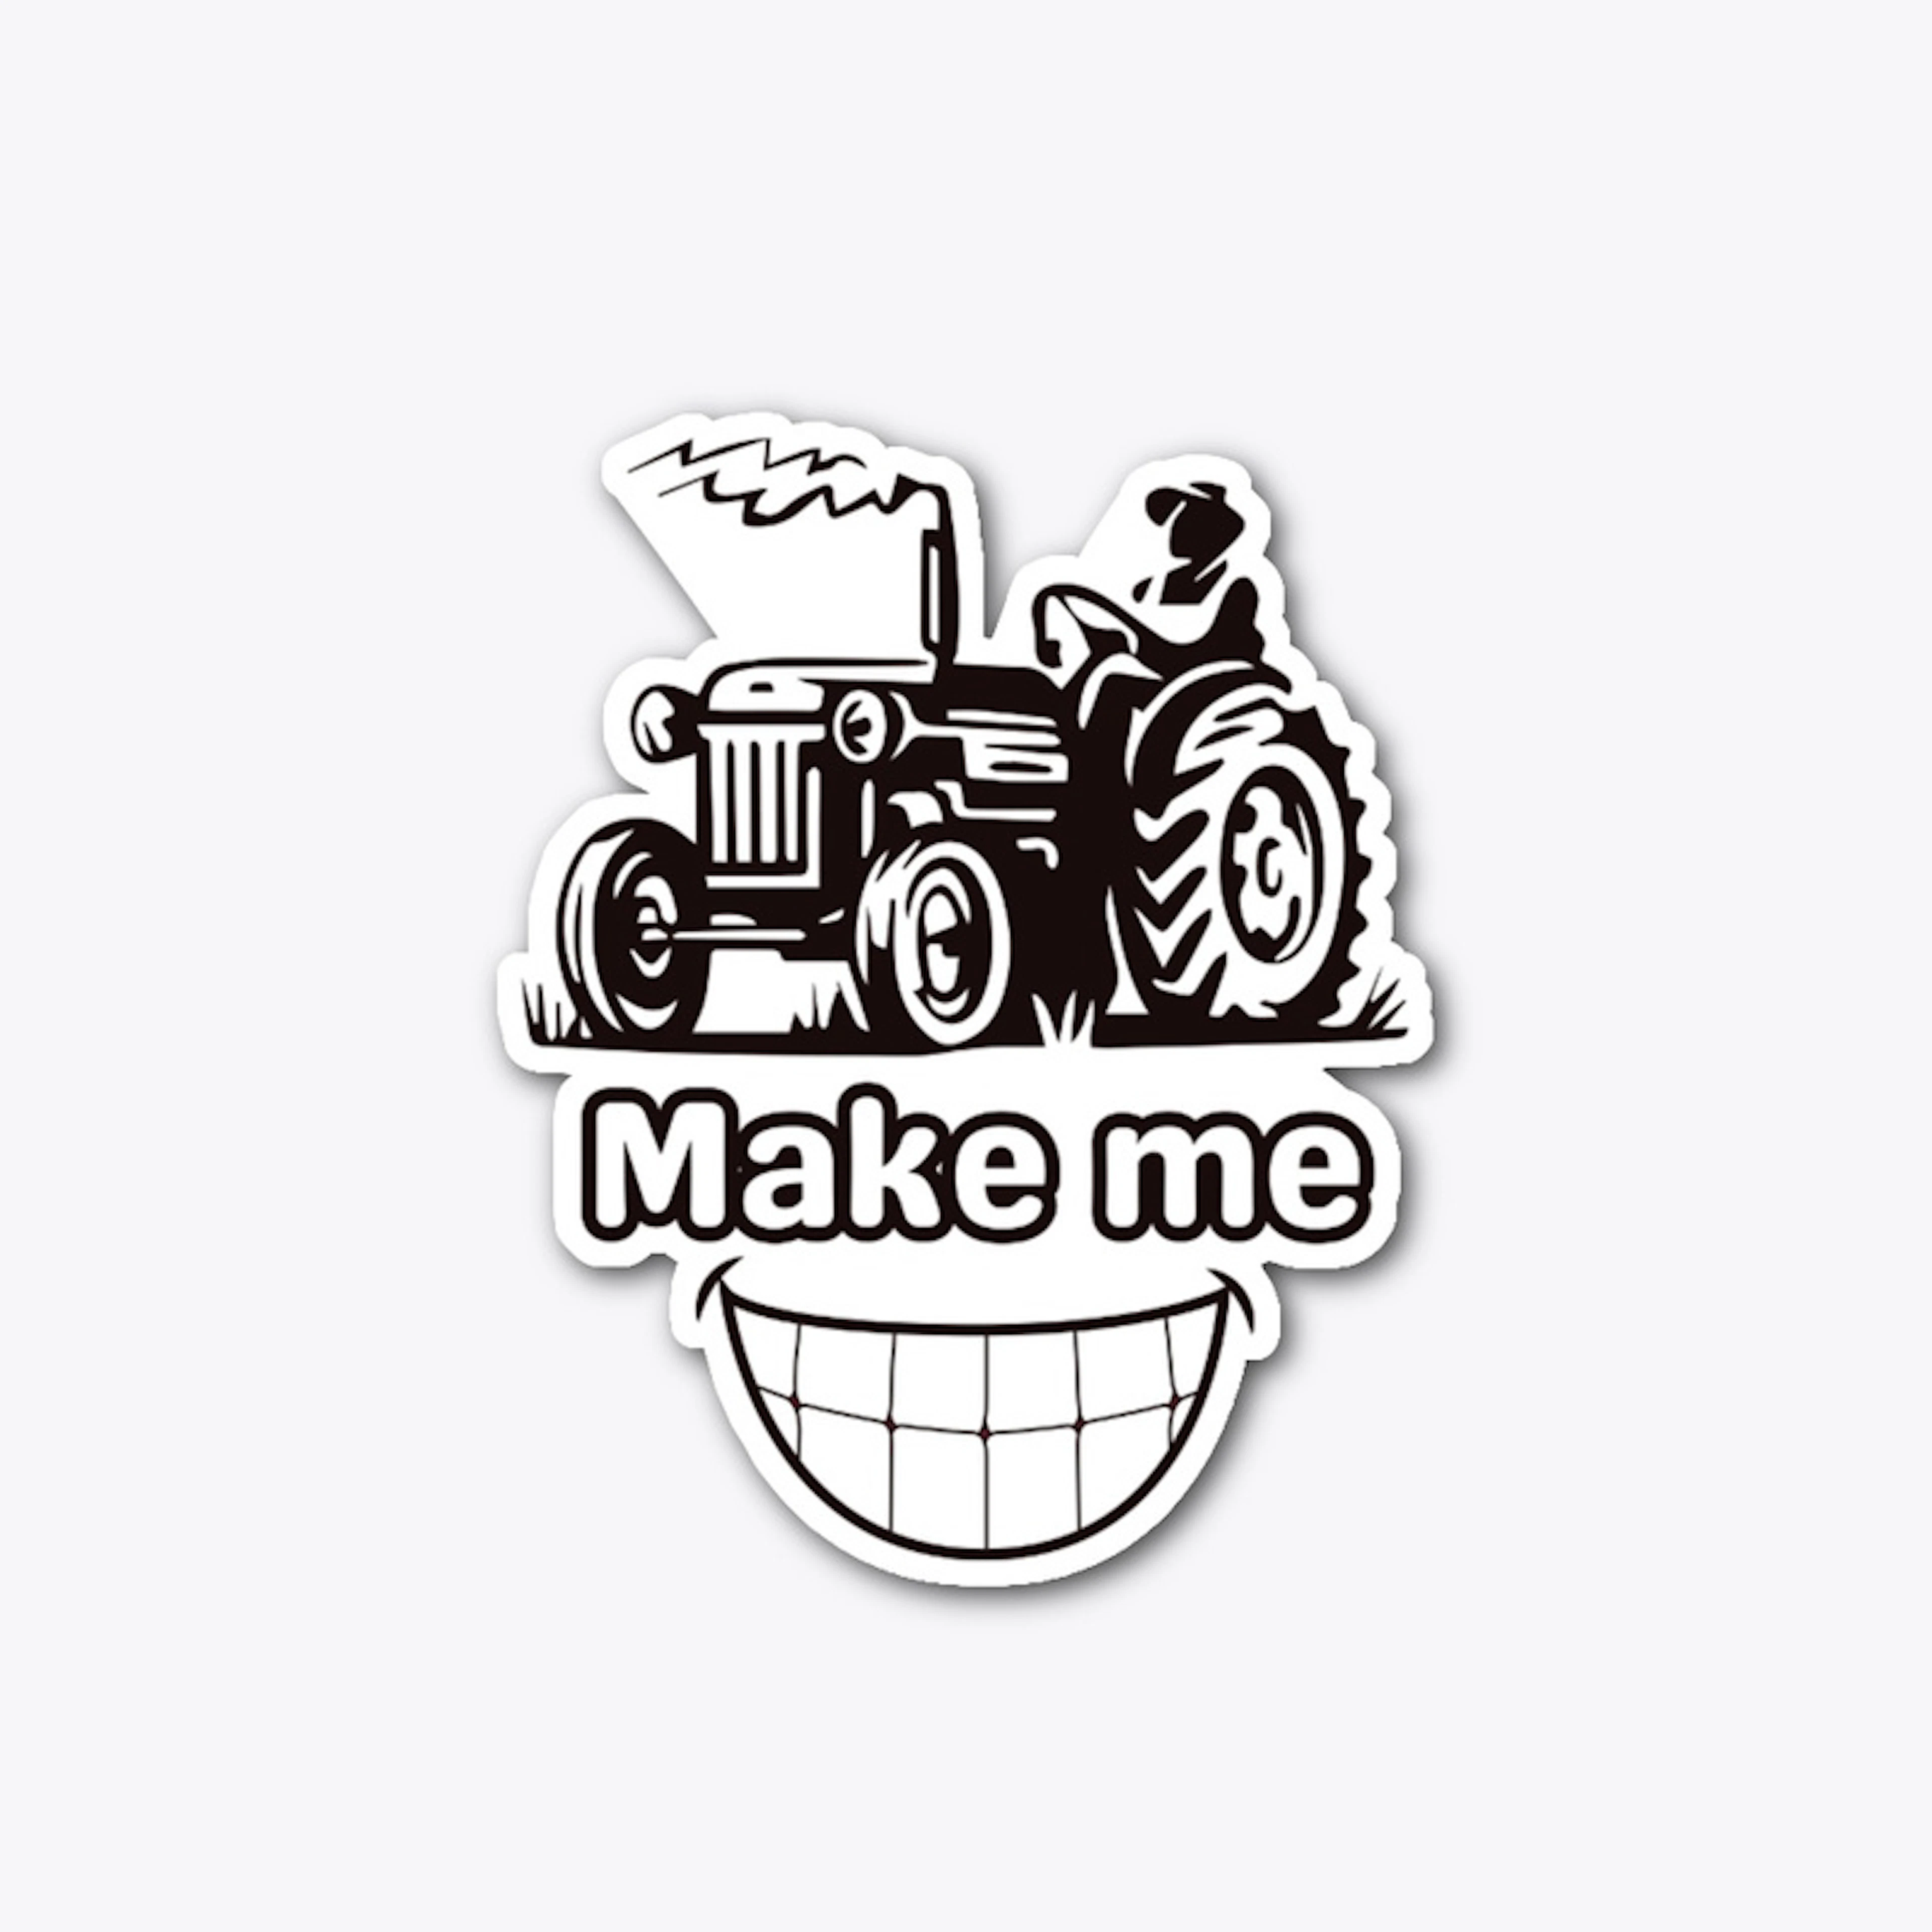 Tractors make me Smile